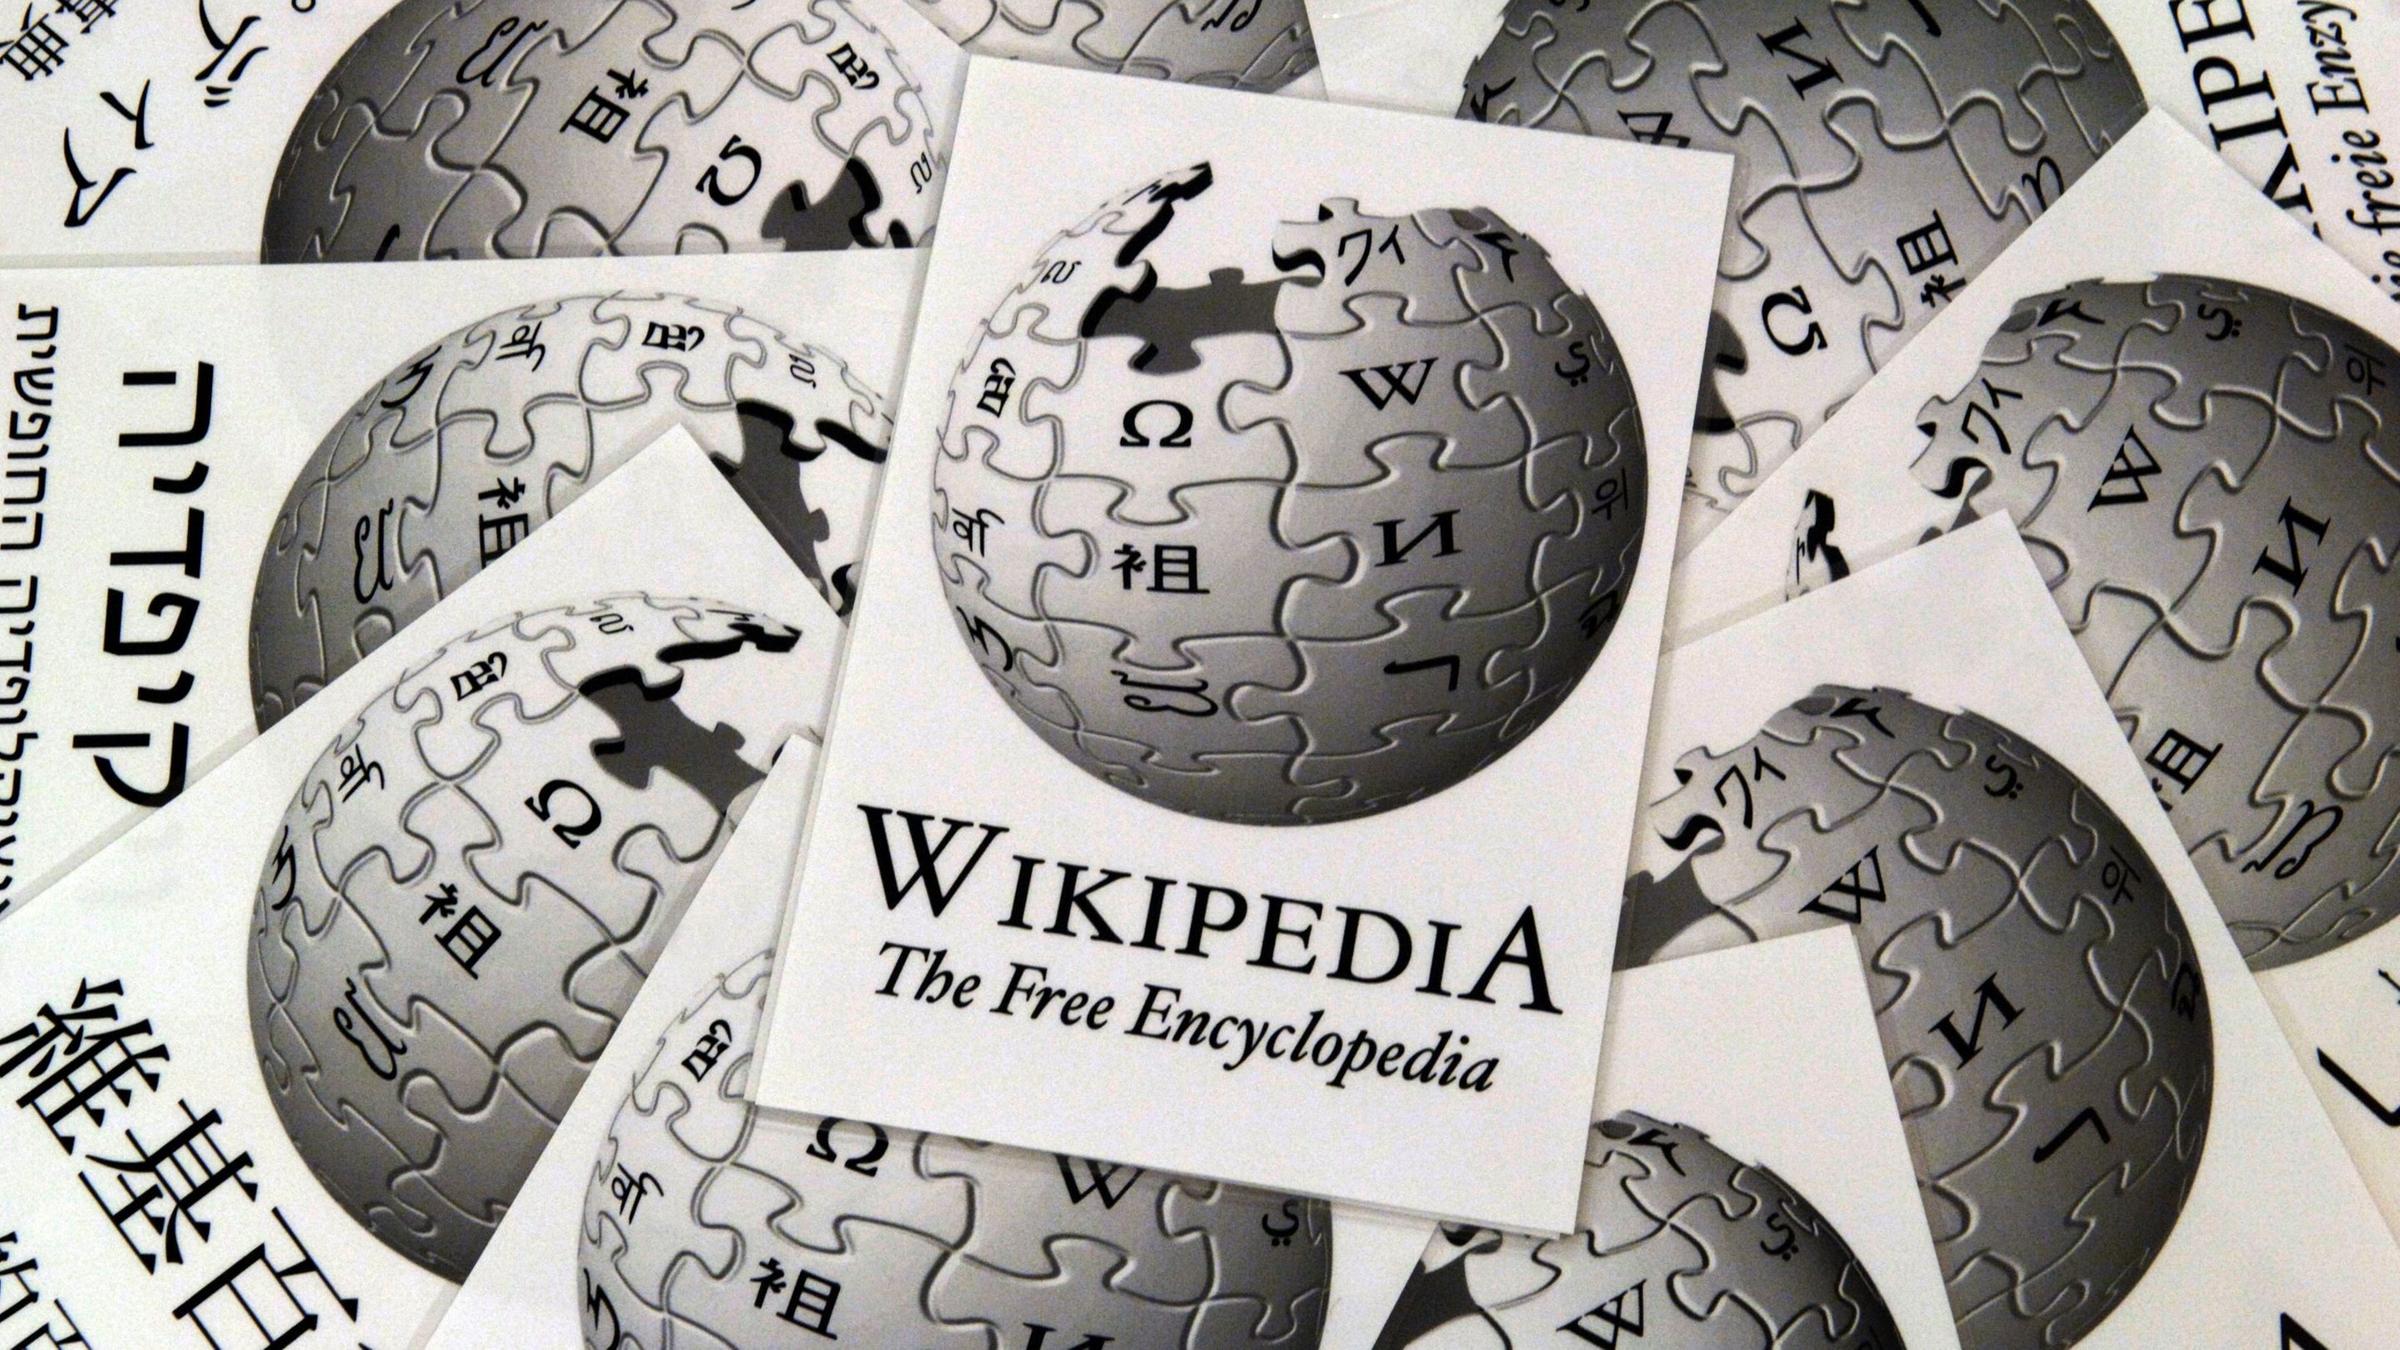 20 Jahre Online Enzyklopadie Quelle Wikipedia Geht Das Zdfheute